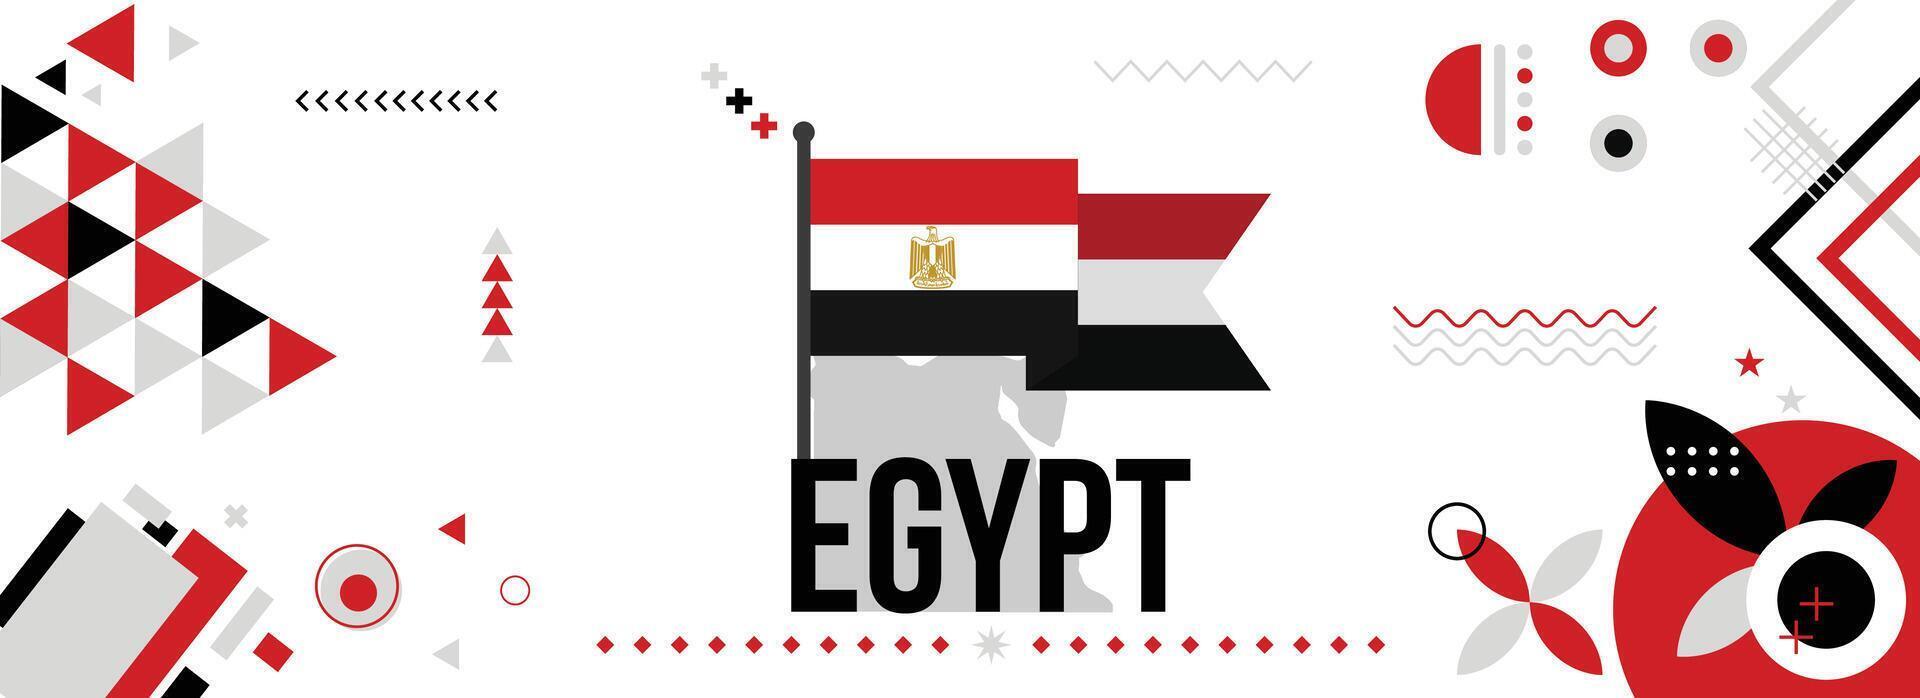 Egipto nacional o independencia día bandera para país celebracion. bandera y mapa de Egipto con elevado puños moderno retro diseño con tiporgafia resumen geométrico iconos vector ilustración.